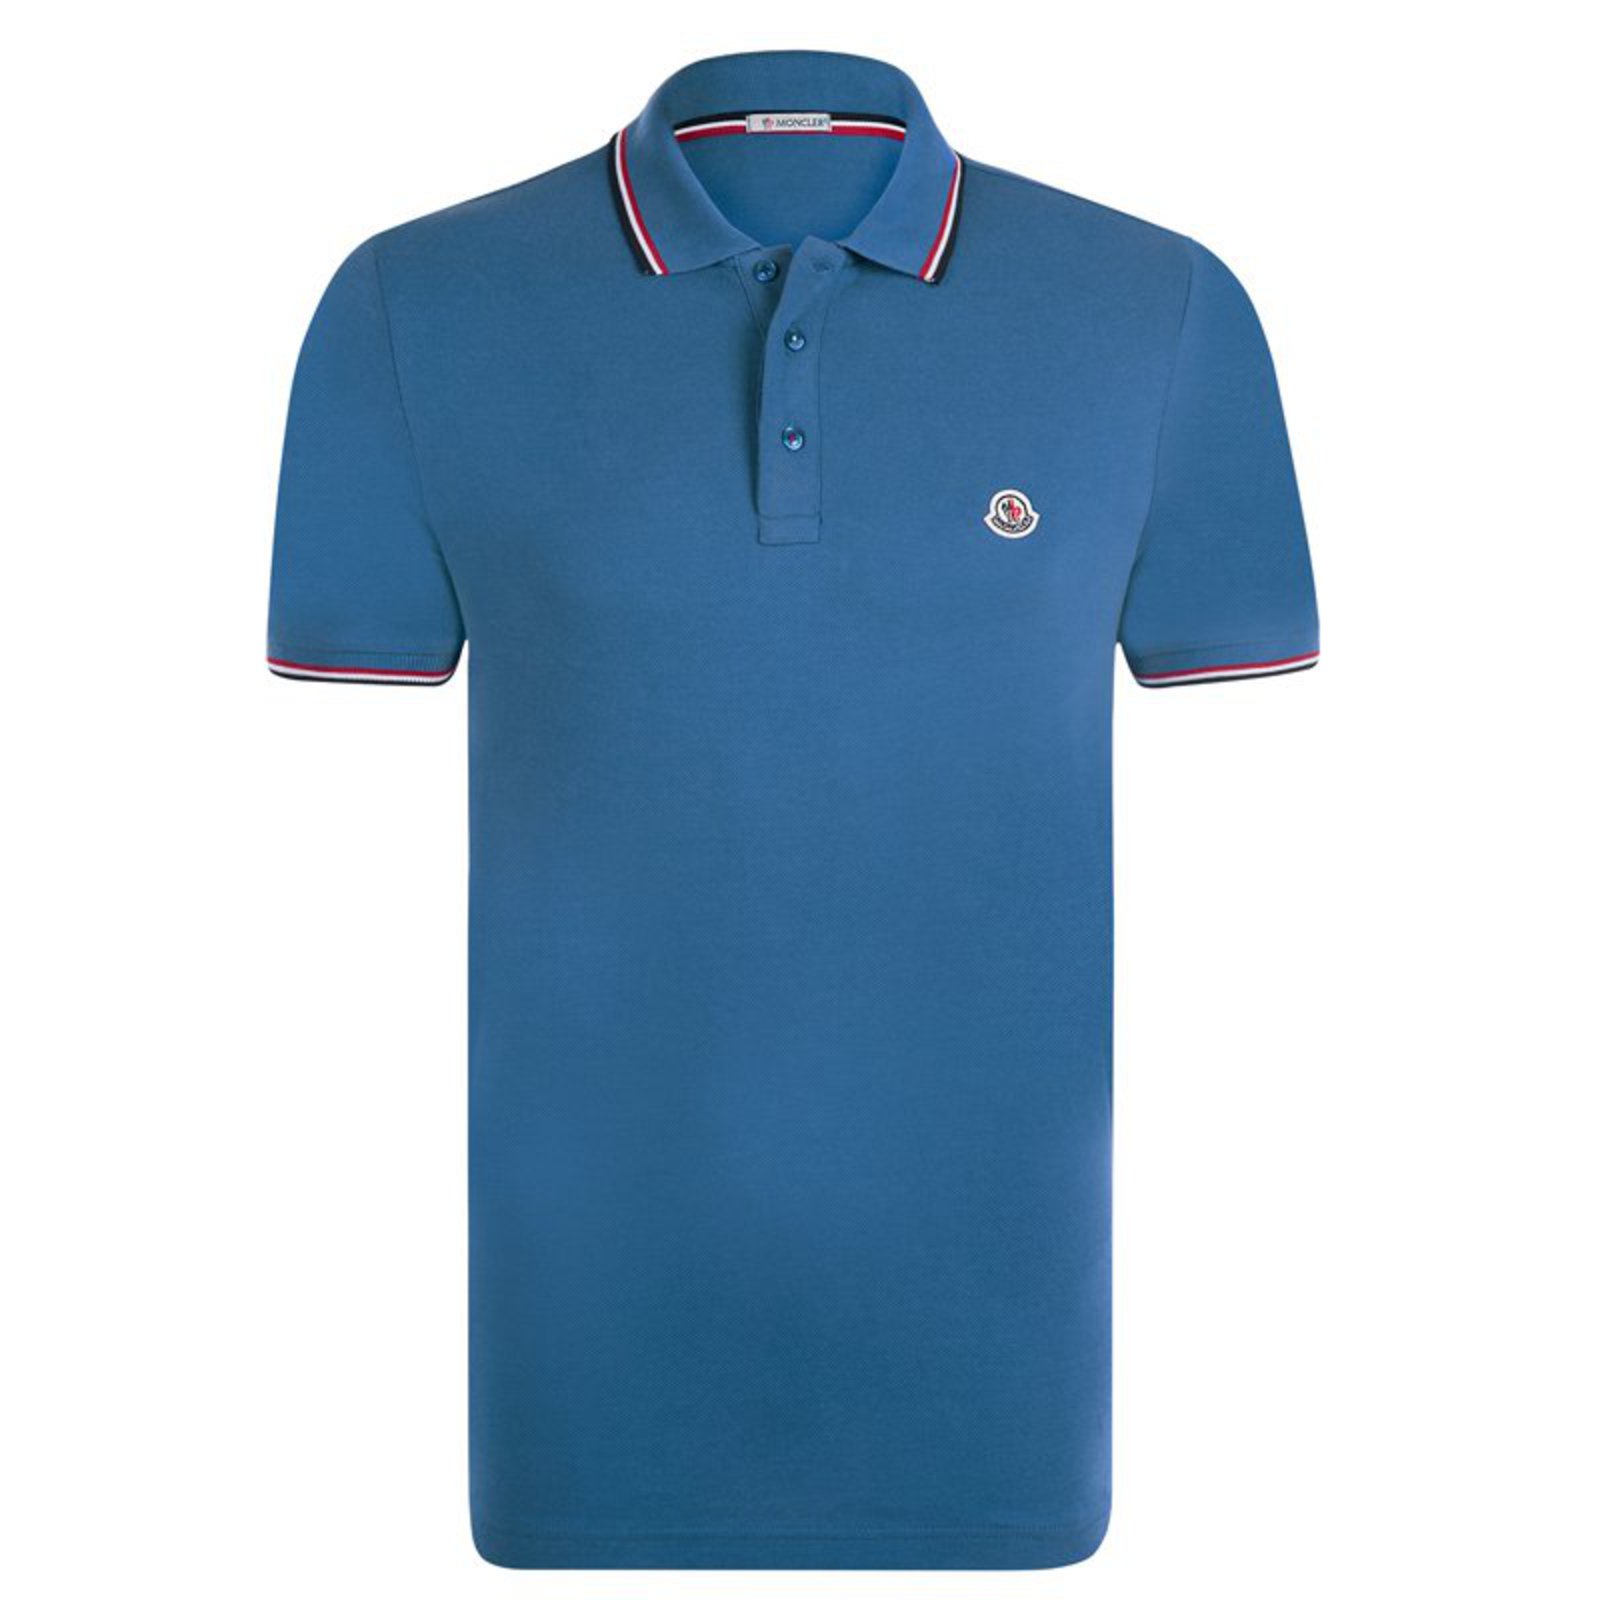 Moncler Moncler brand new polo light blue shirt eu medium Polos Cotton ...